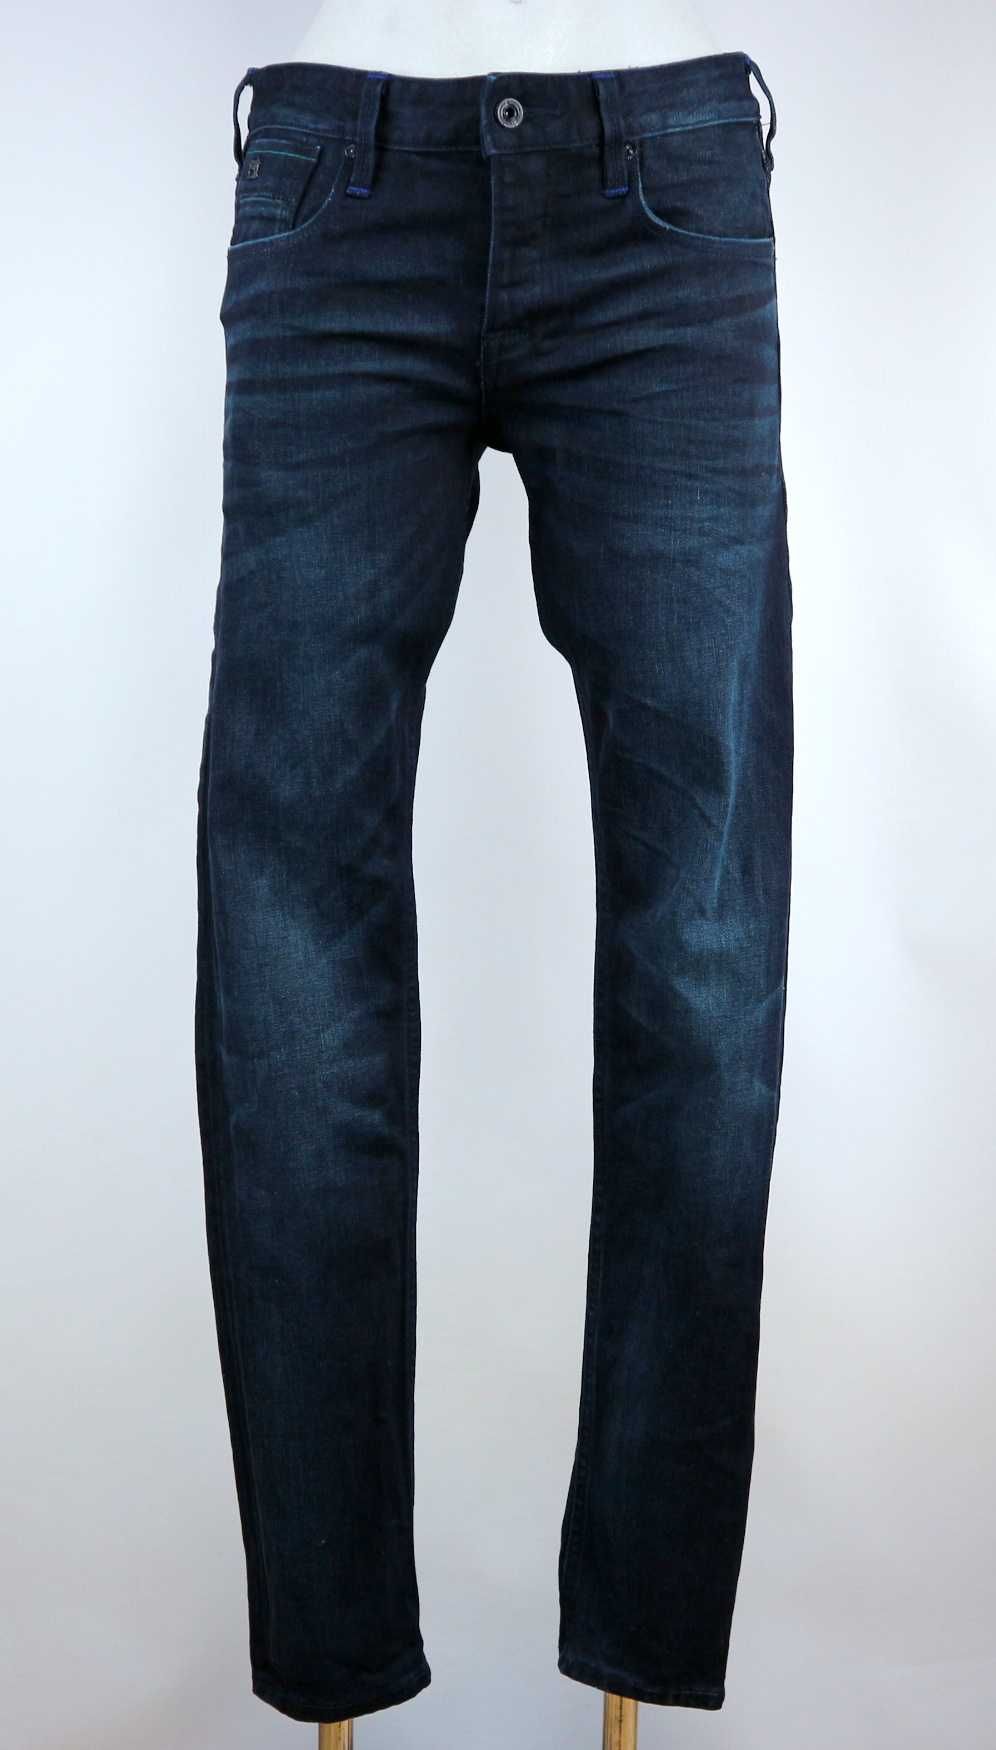 Scotch & Soda Ralston X spodnie jeansy W29 L34 pas 2 x 40 cm